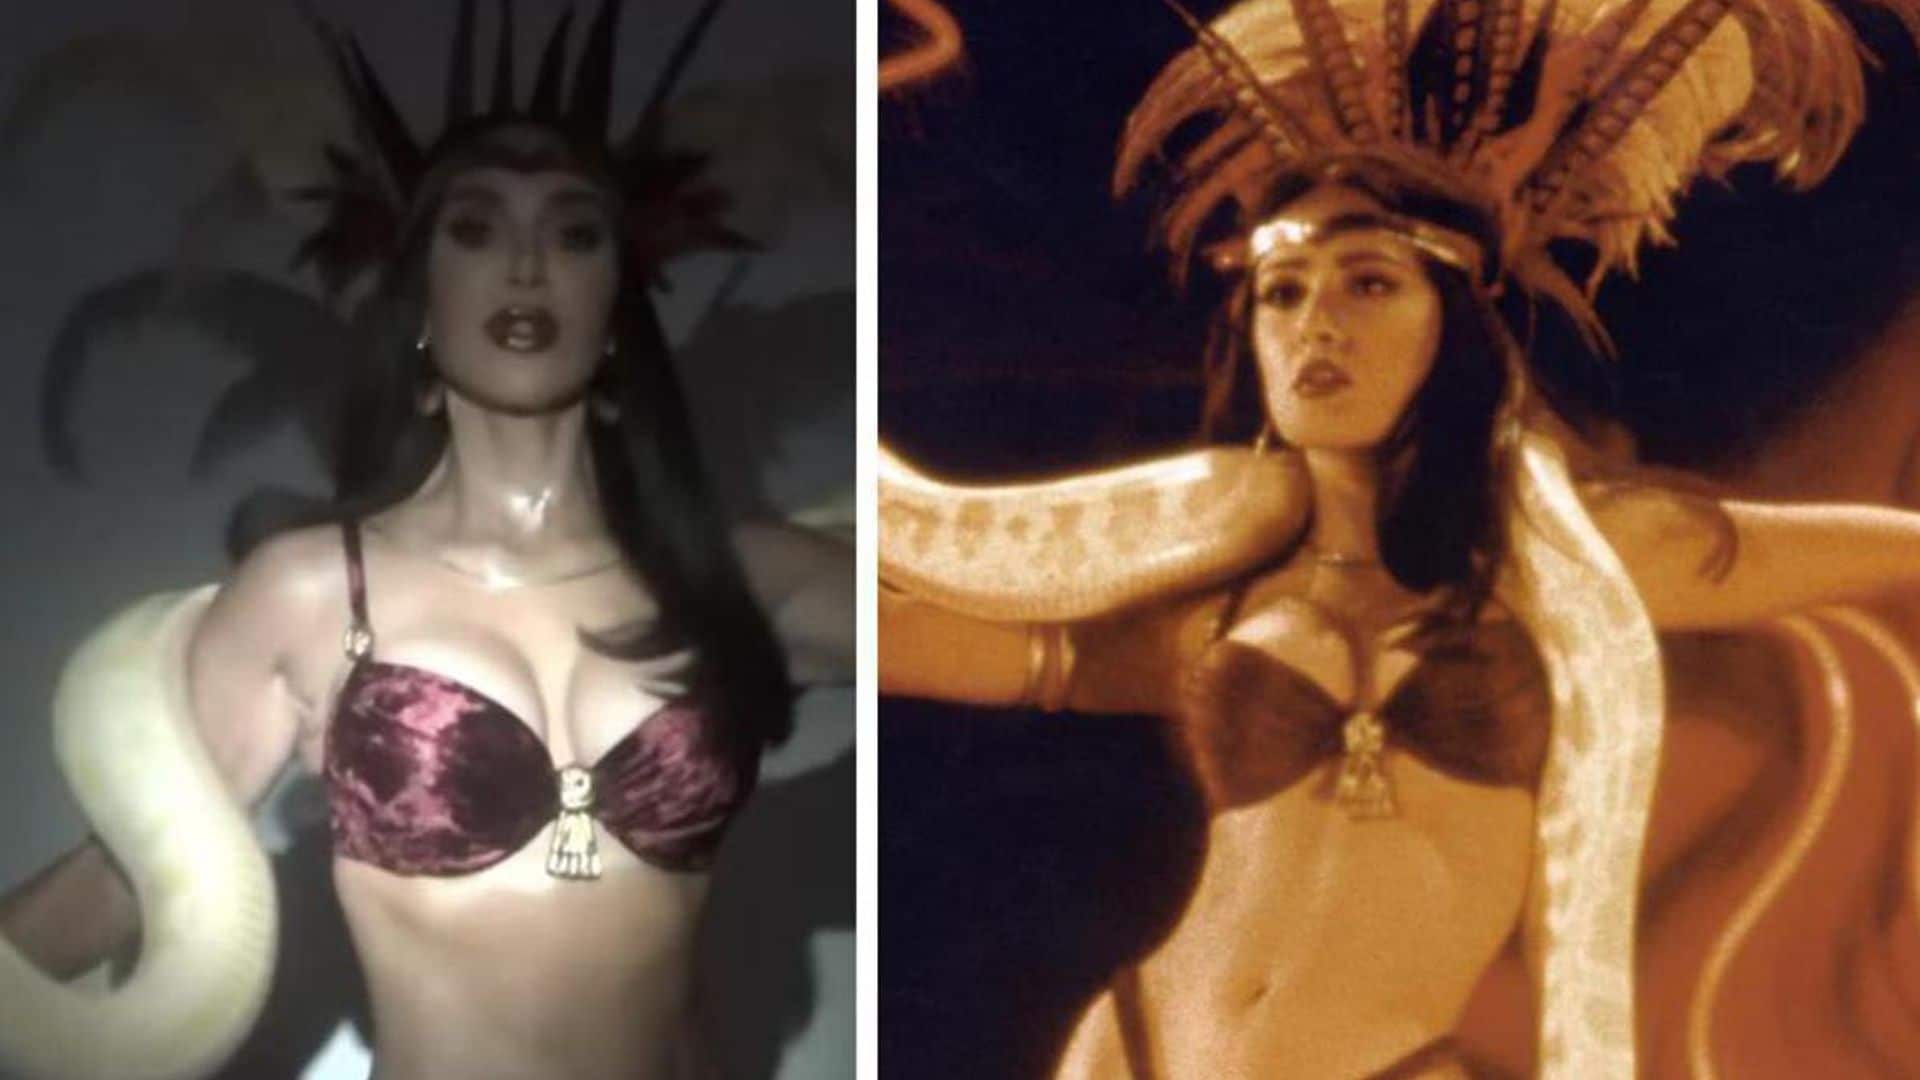 Salma Hayek reacts to Kim Kardashian’s ‘From Dusk Till Dawn’ costume